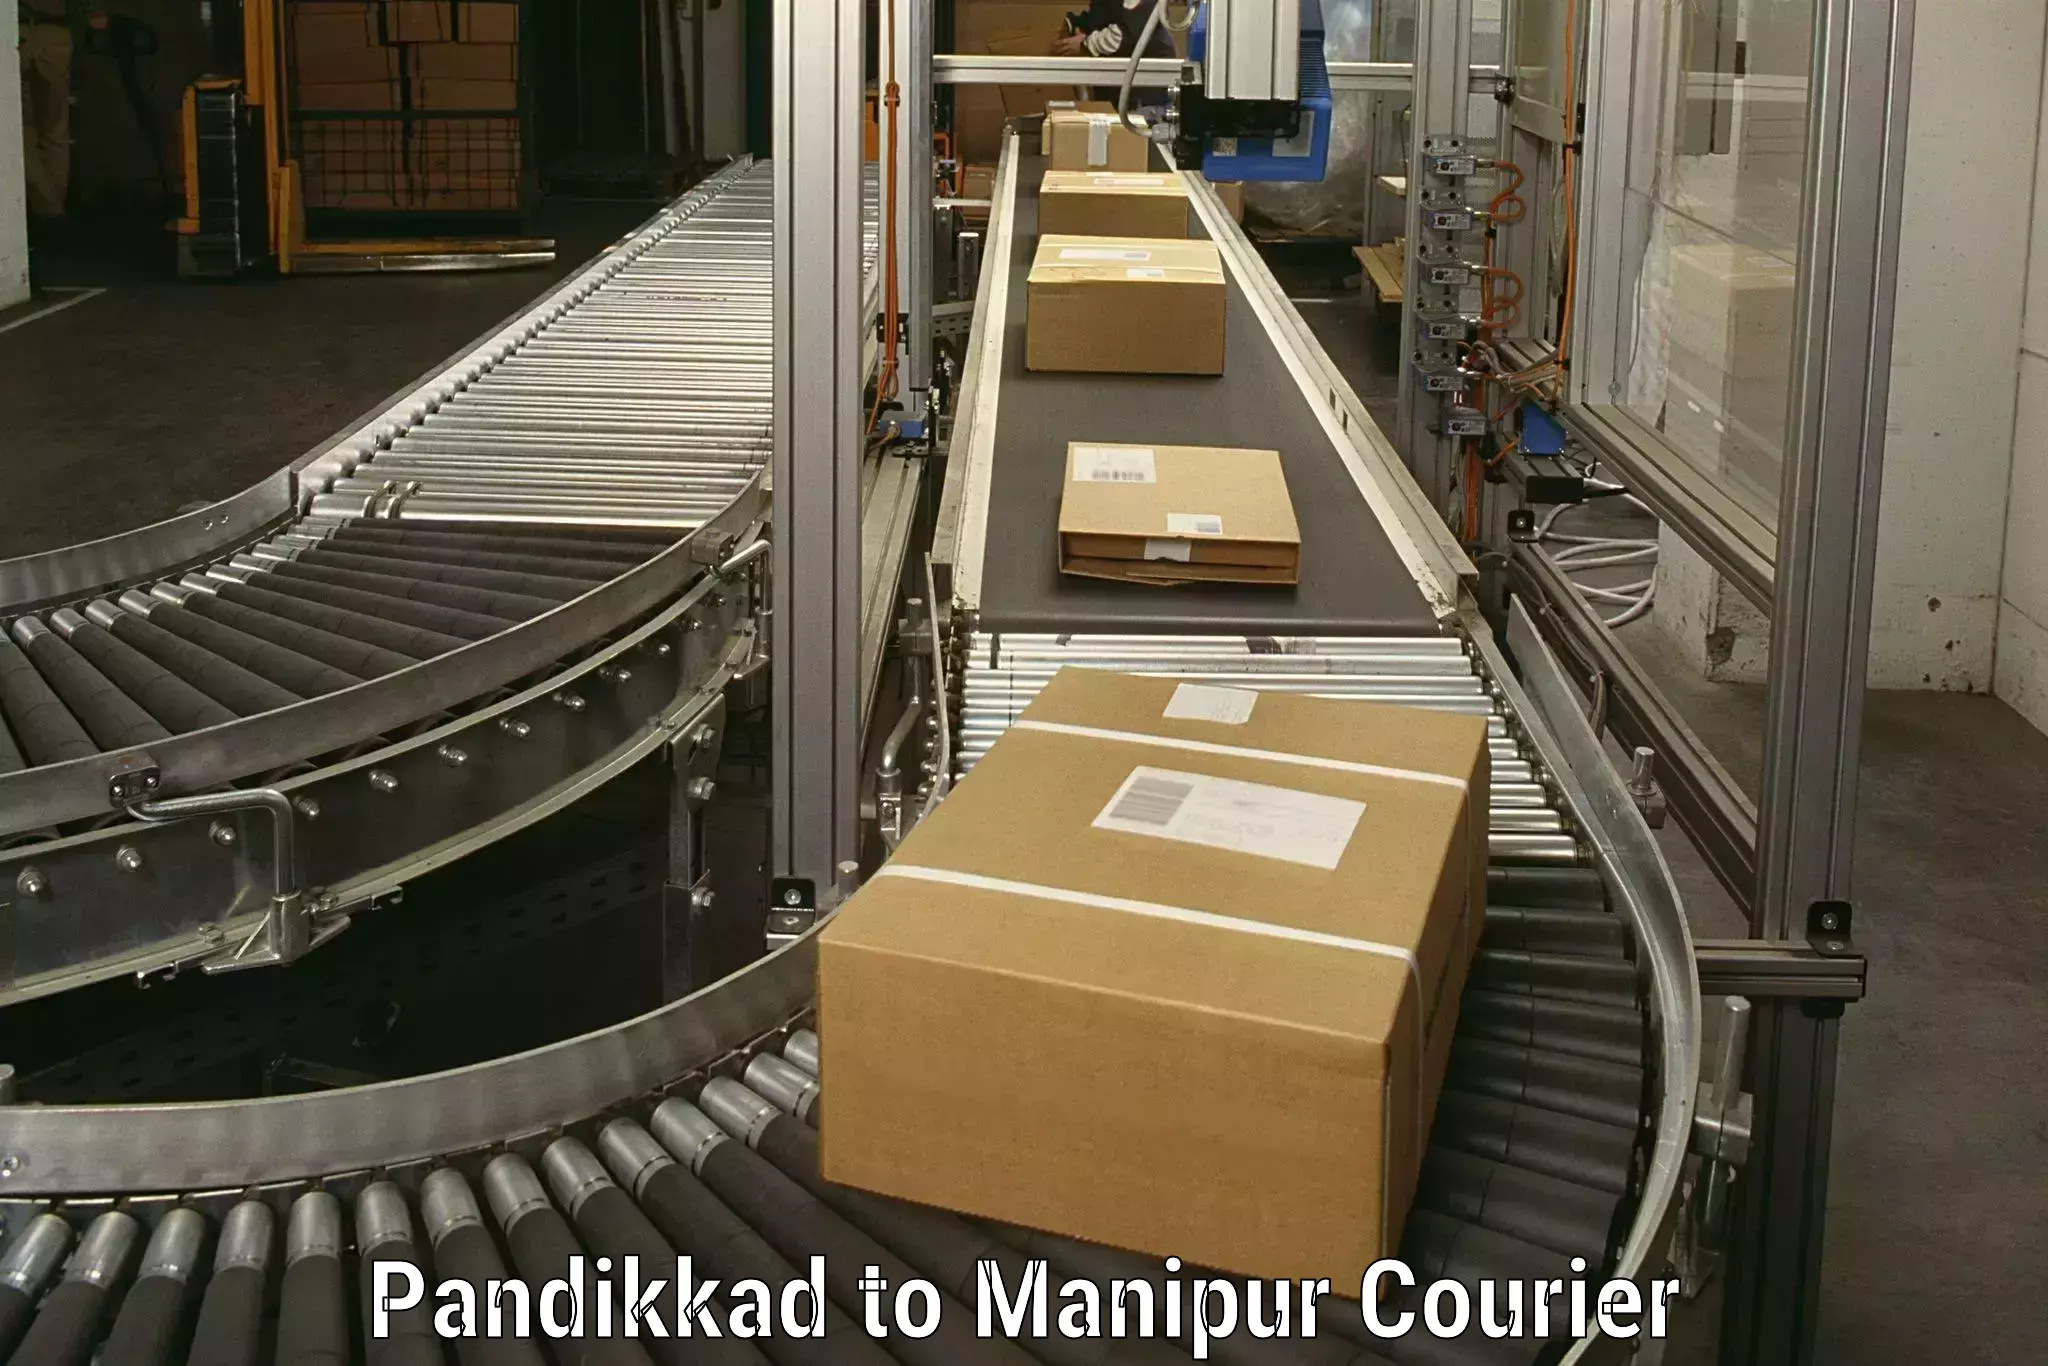 Furniture moving service in Pandikkad to Moirang